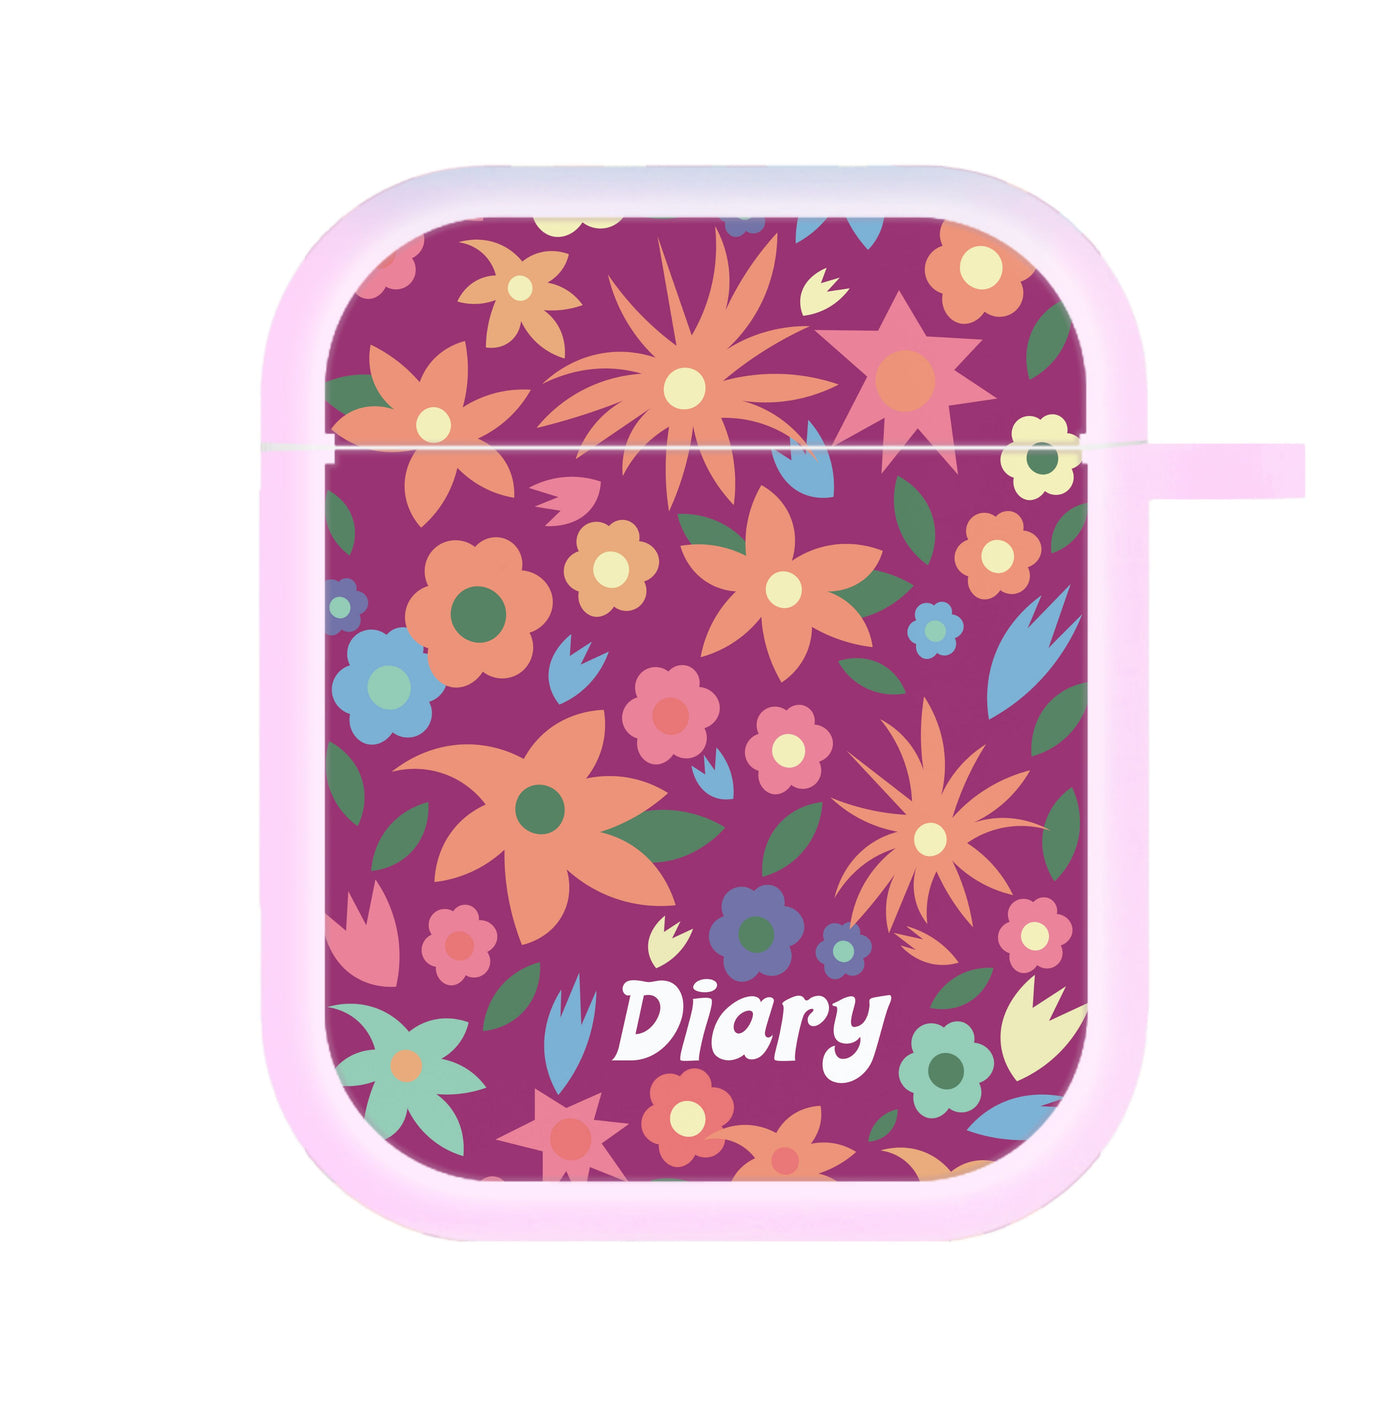 Diary - Mamma Mia AirPods Case